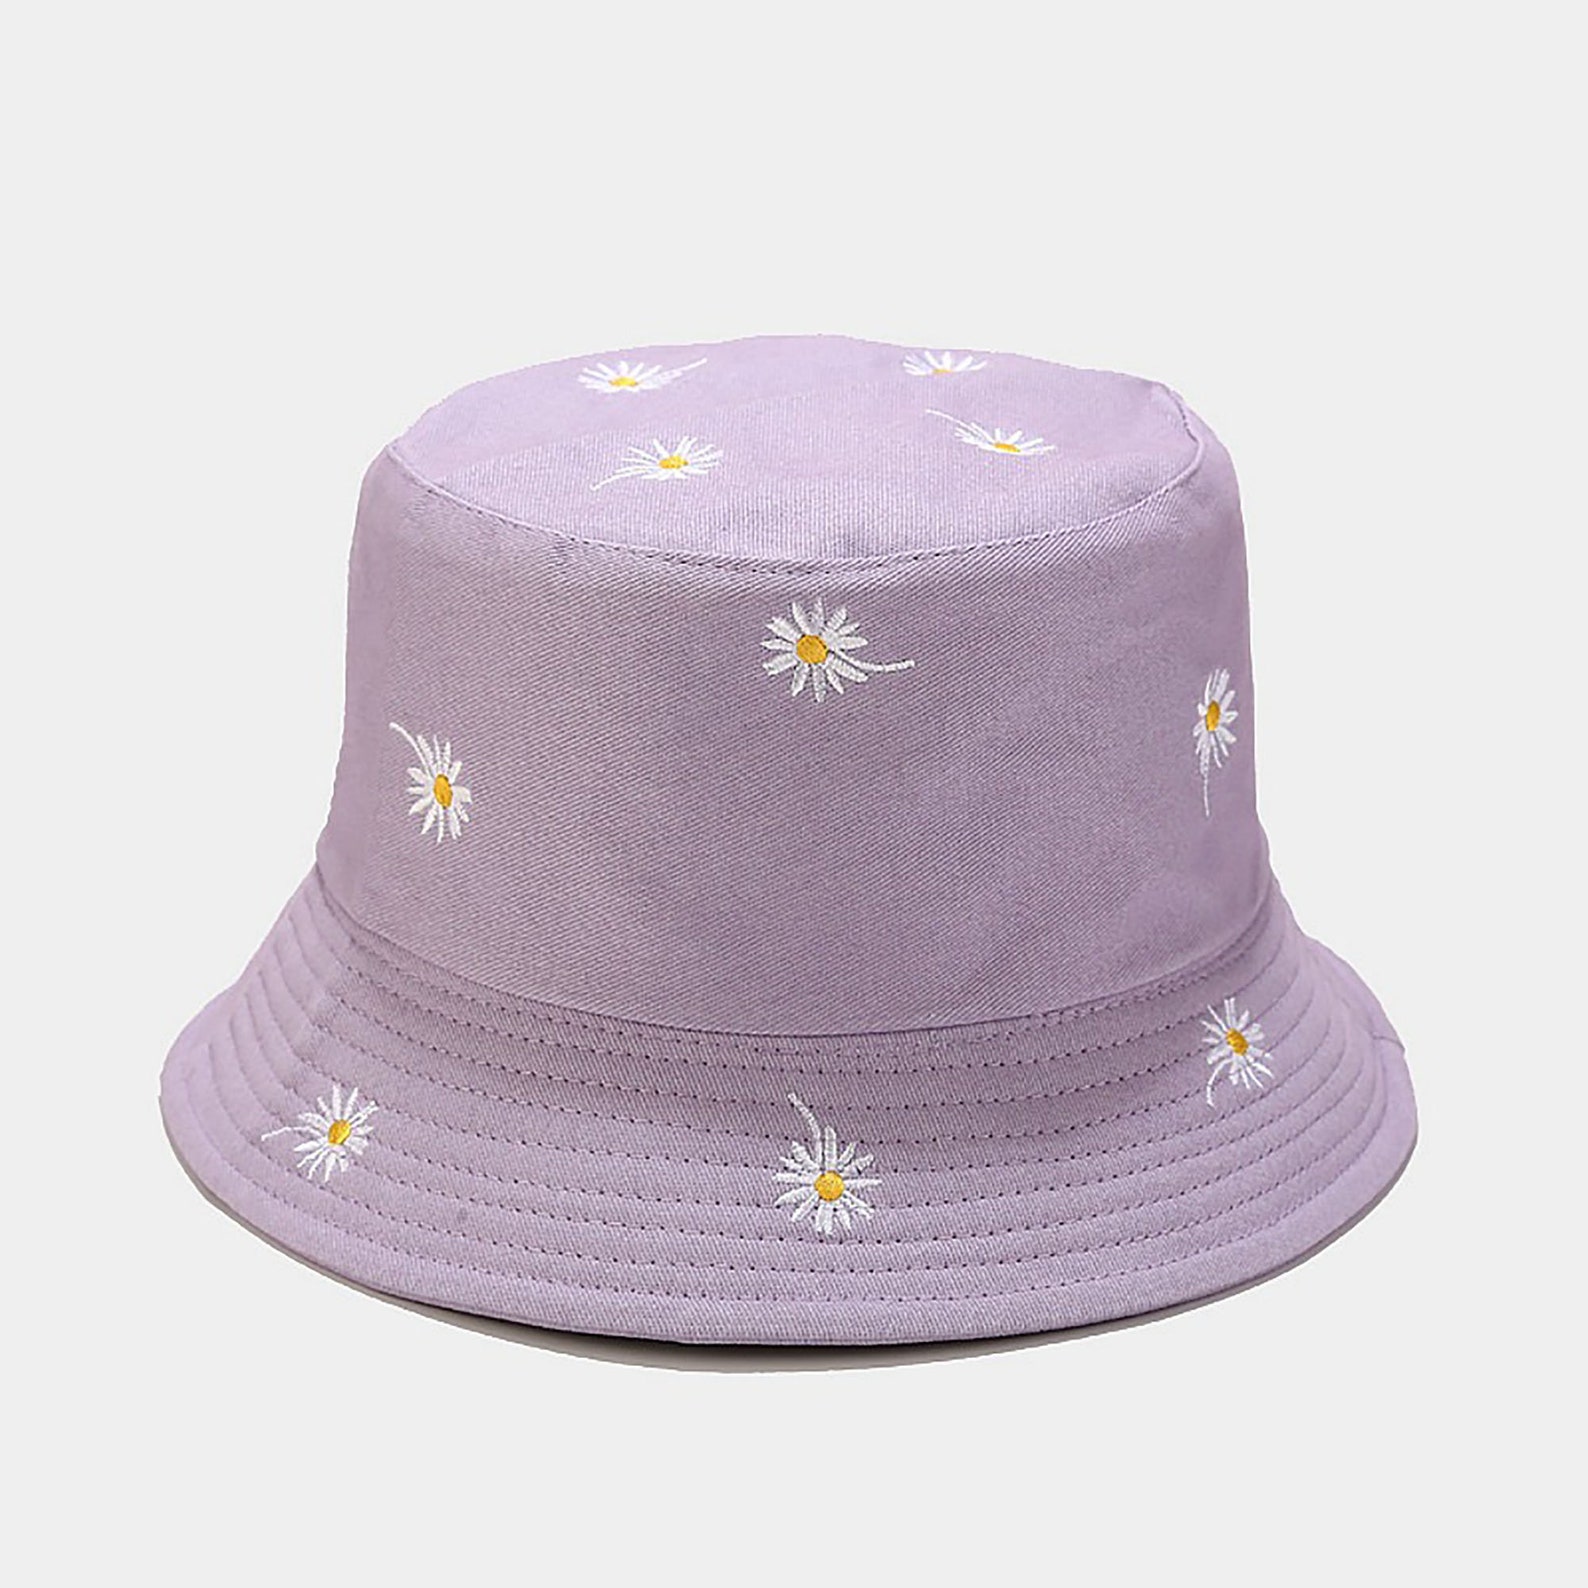 Double-side Unisex Bucket Hat Daisy Embroidery HatFashion | Etsy